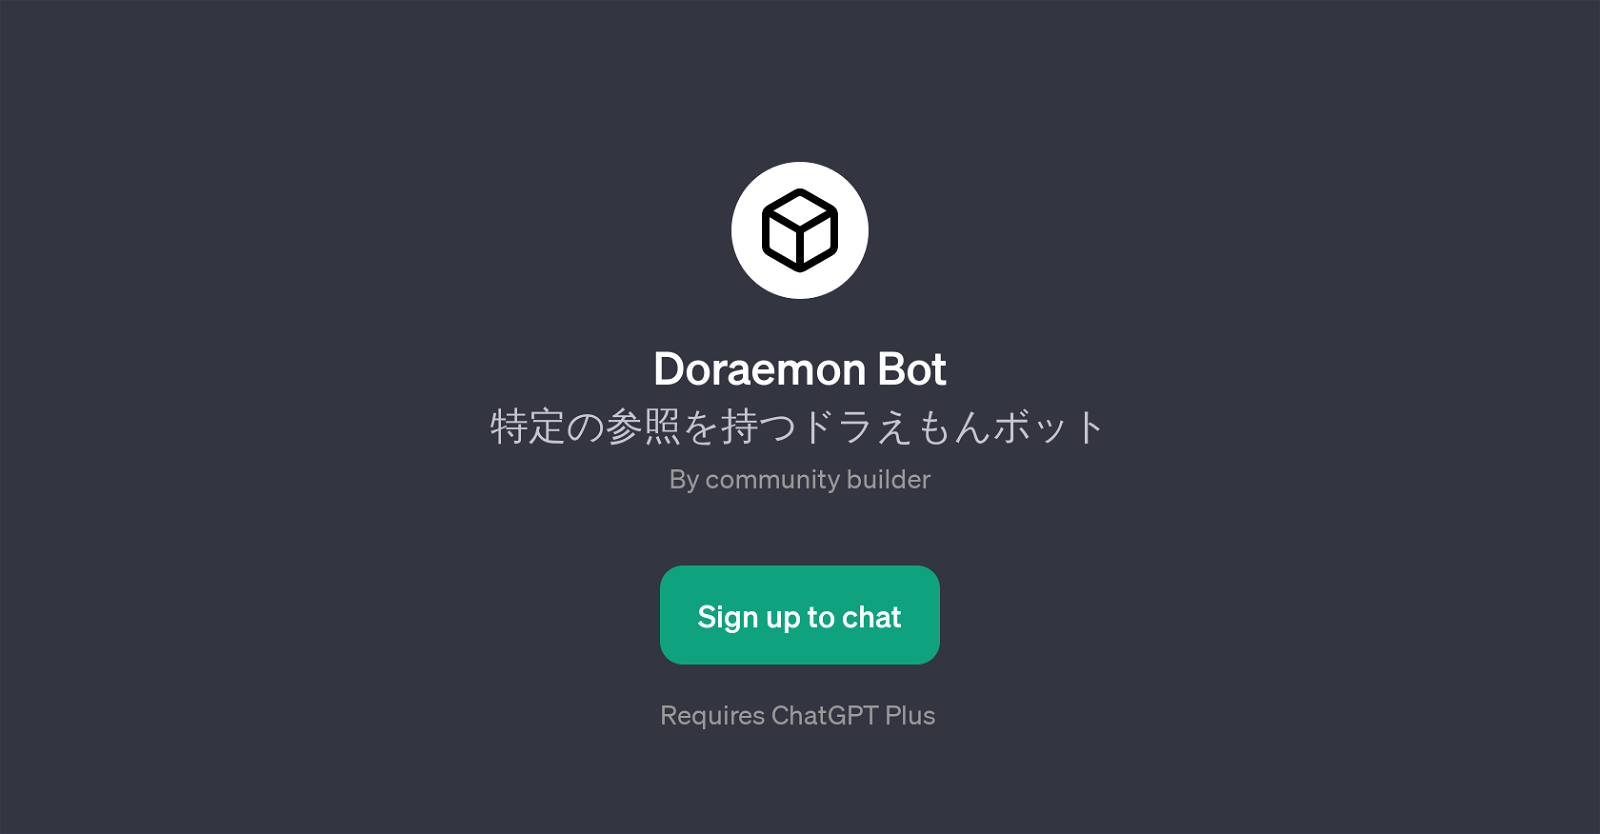 Doraemon Bot website